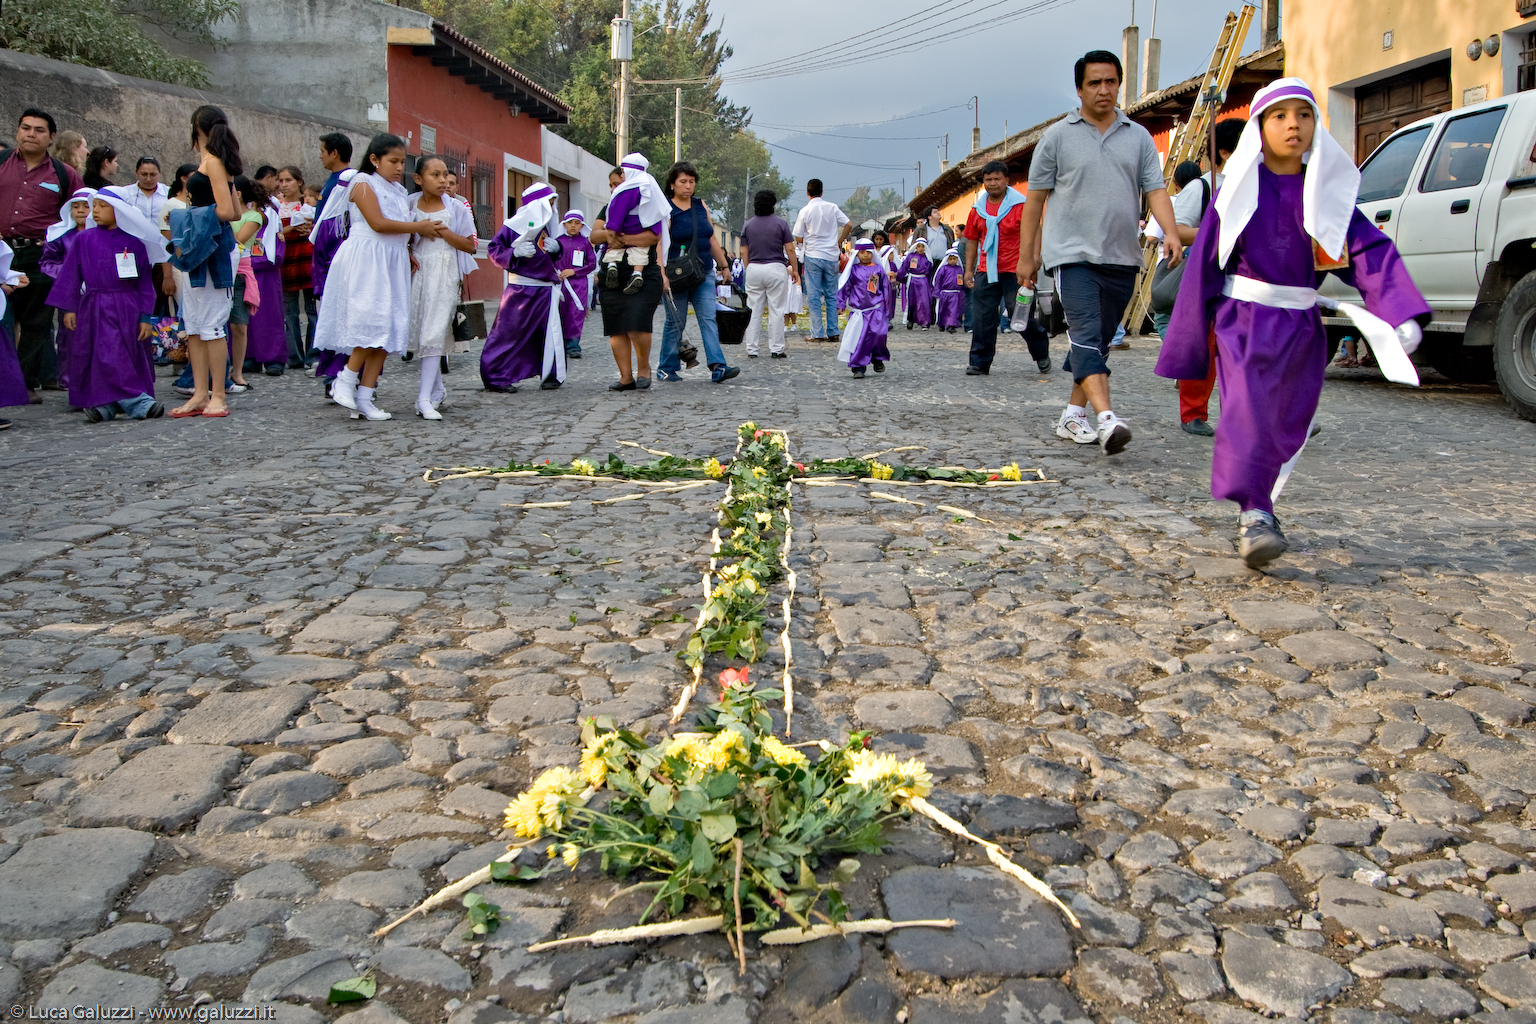 Le suggestive strade acciotolate di Antigua vengono addobbate di fiori durante la Semana Santa